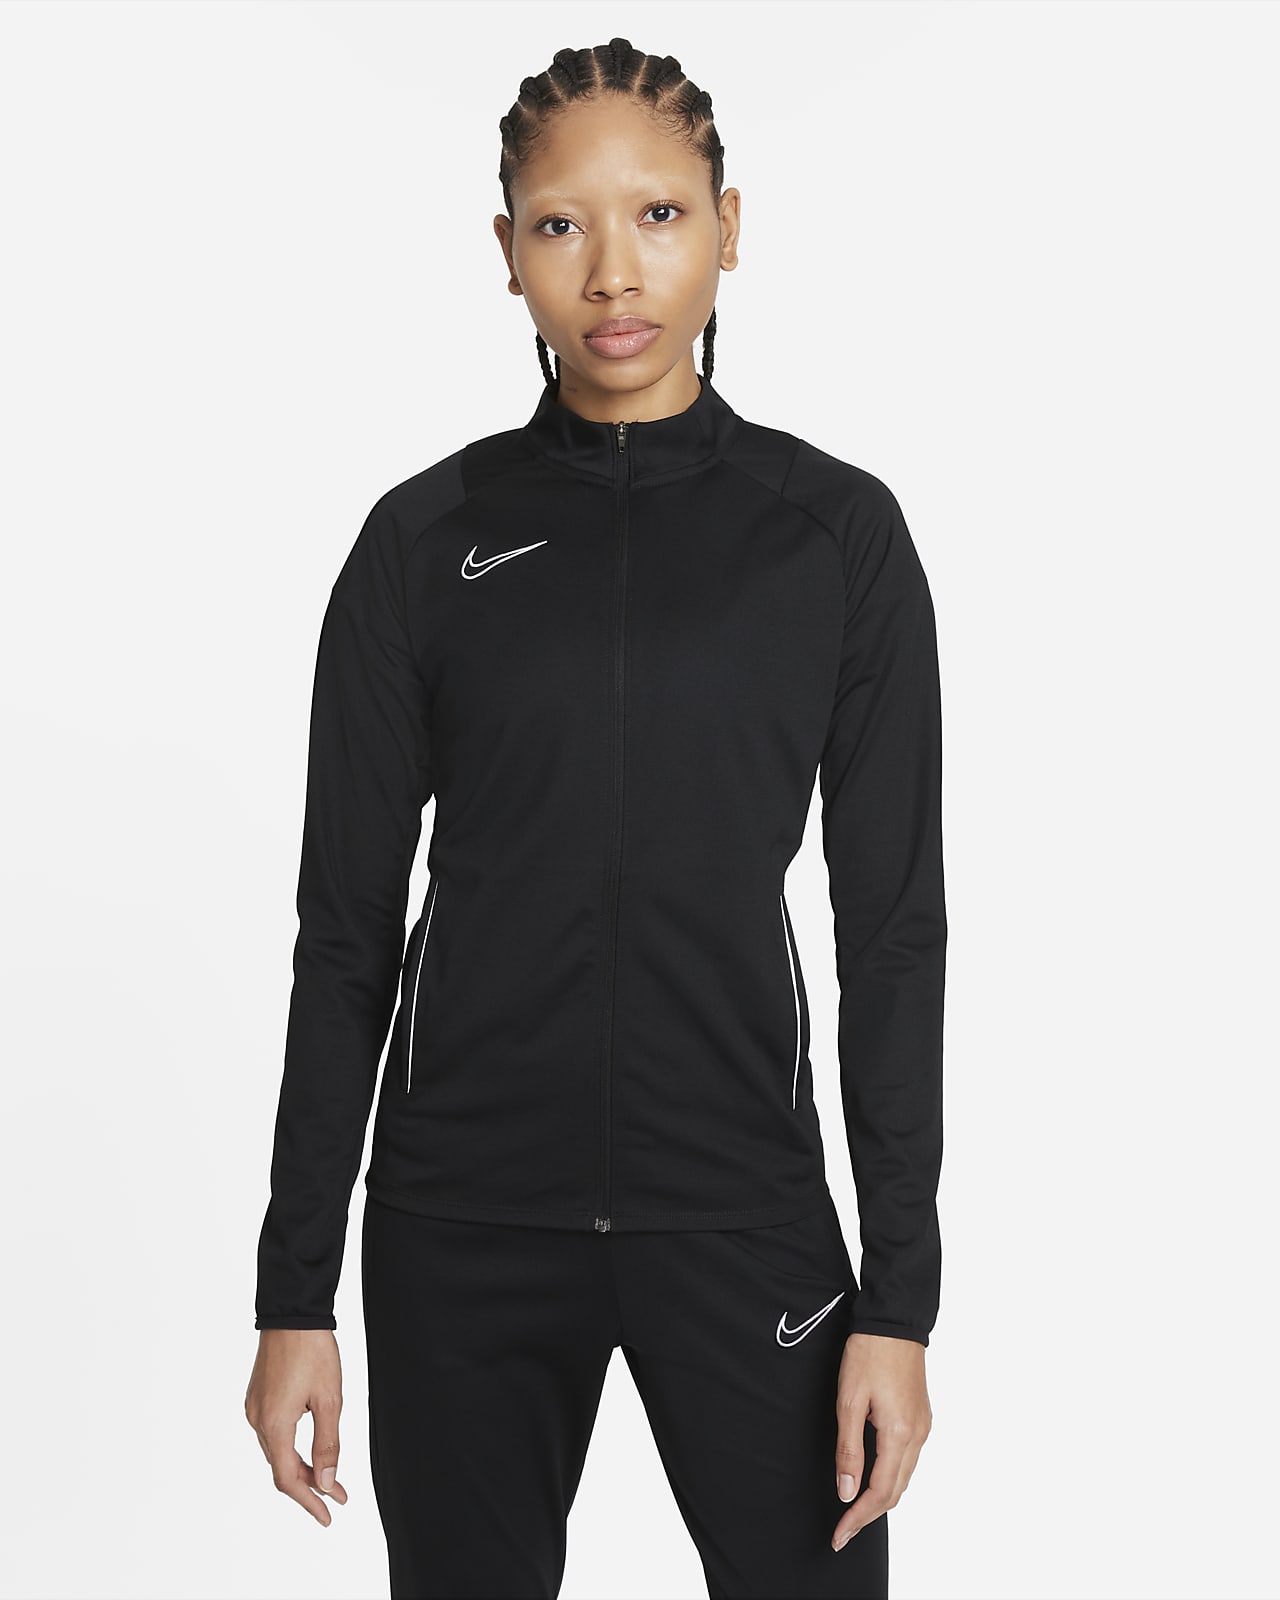 Survêtement Nike Dri-Fit Academy 21 pour enfants blanc noir